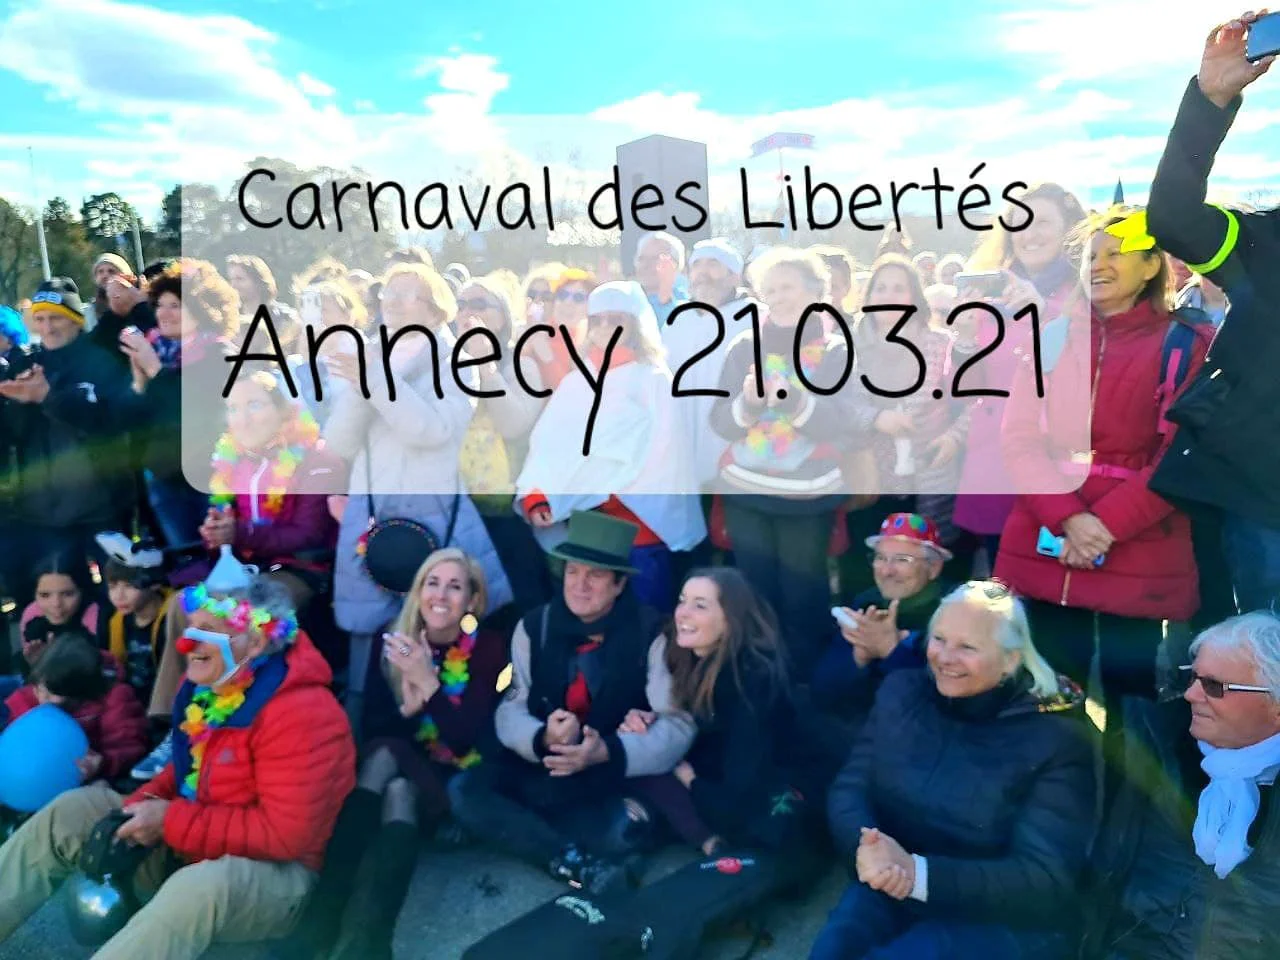 Carnaval des Libertés #3 🕊 Annecy 21.03.21 – avec Francis Lalanne & Barrueco